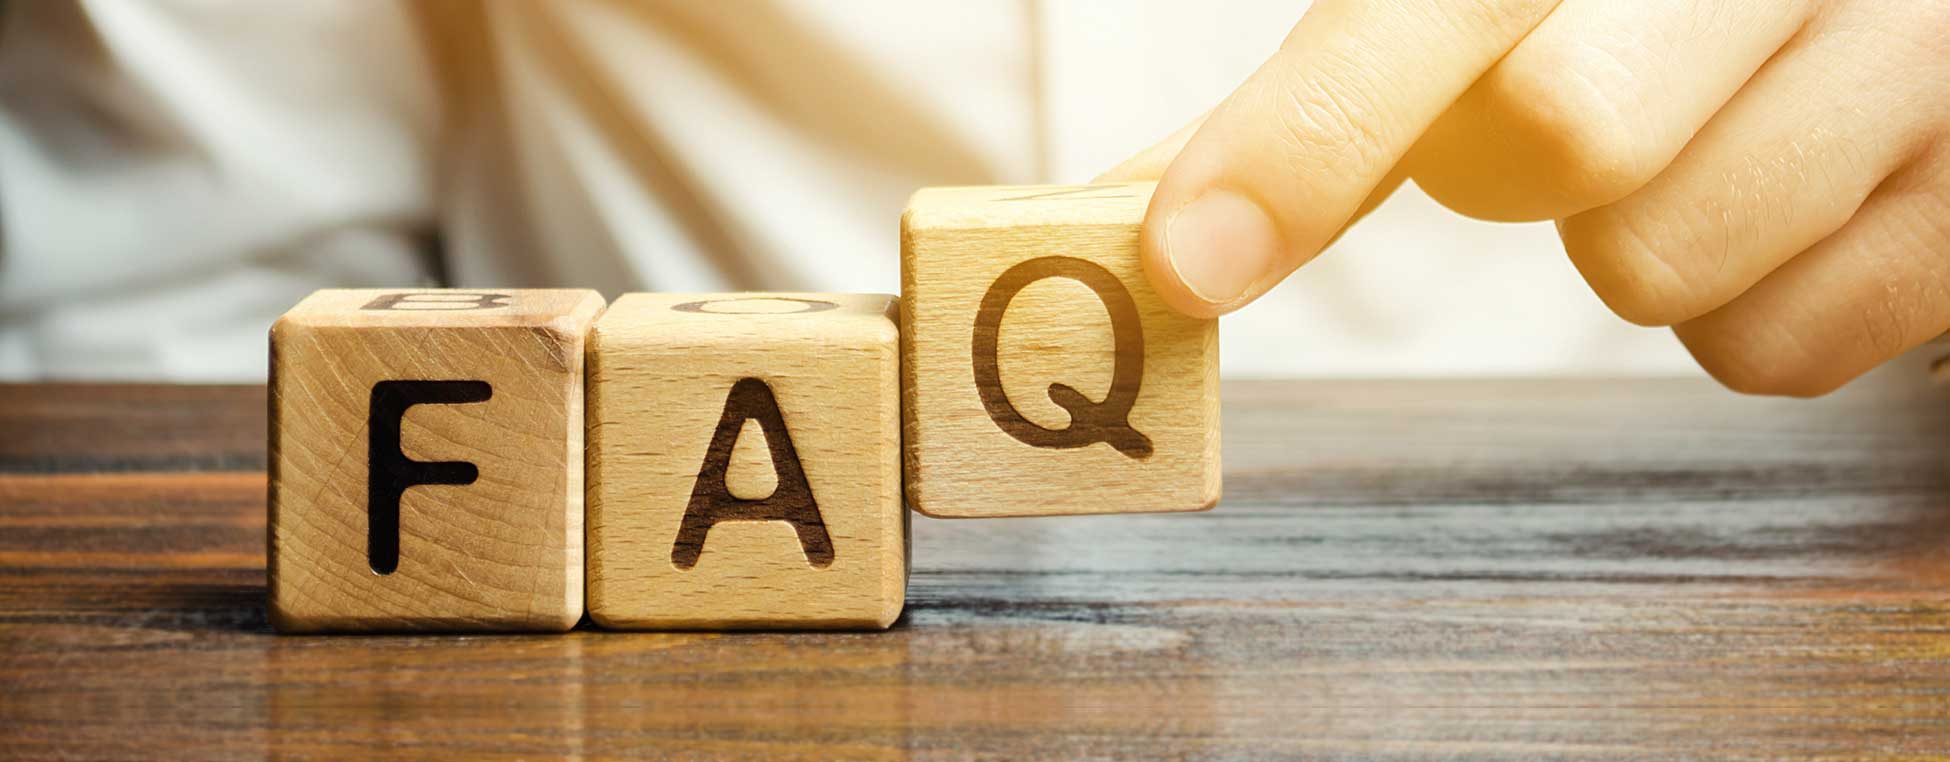 Headergrafik zum Thema Häufig gestellte Fragen/ FAQ